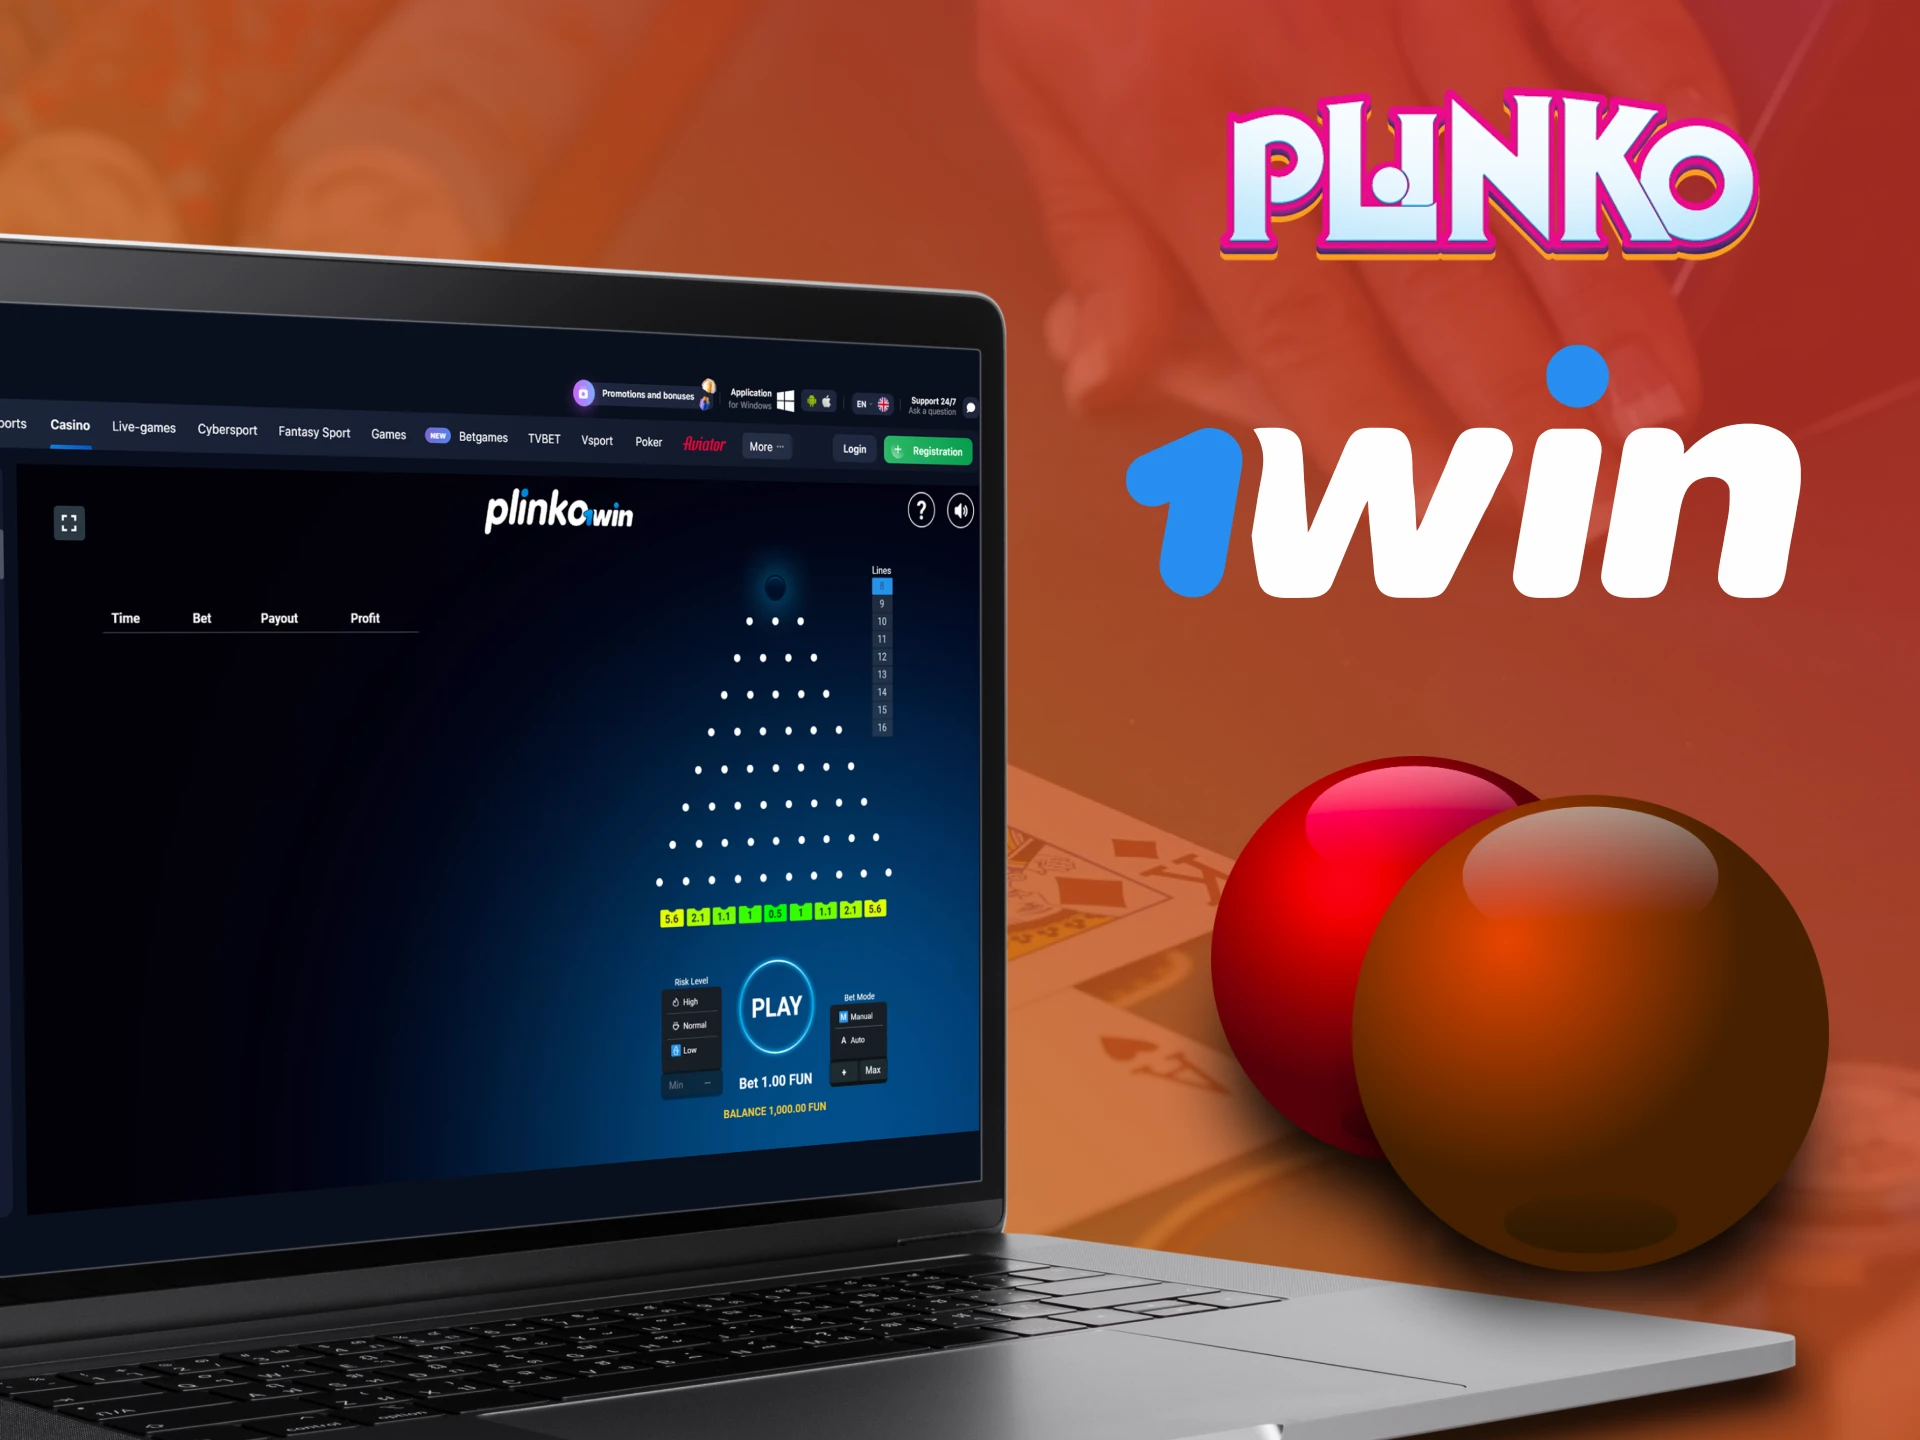 Play Plinko on the 1win website.